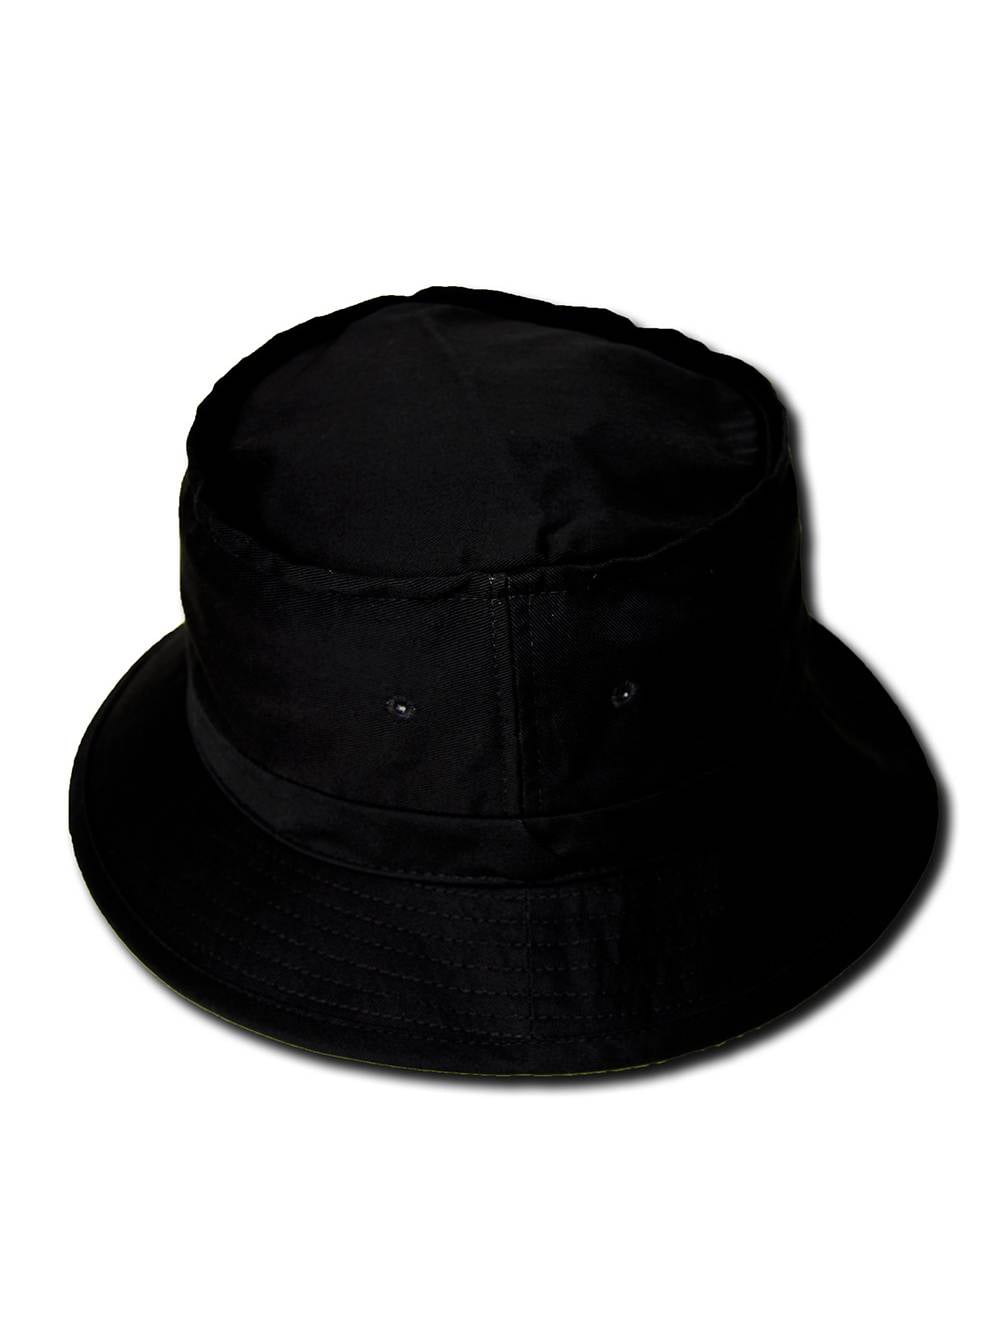 TopHeadwear Solids Bucket Hat - Walmart.com